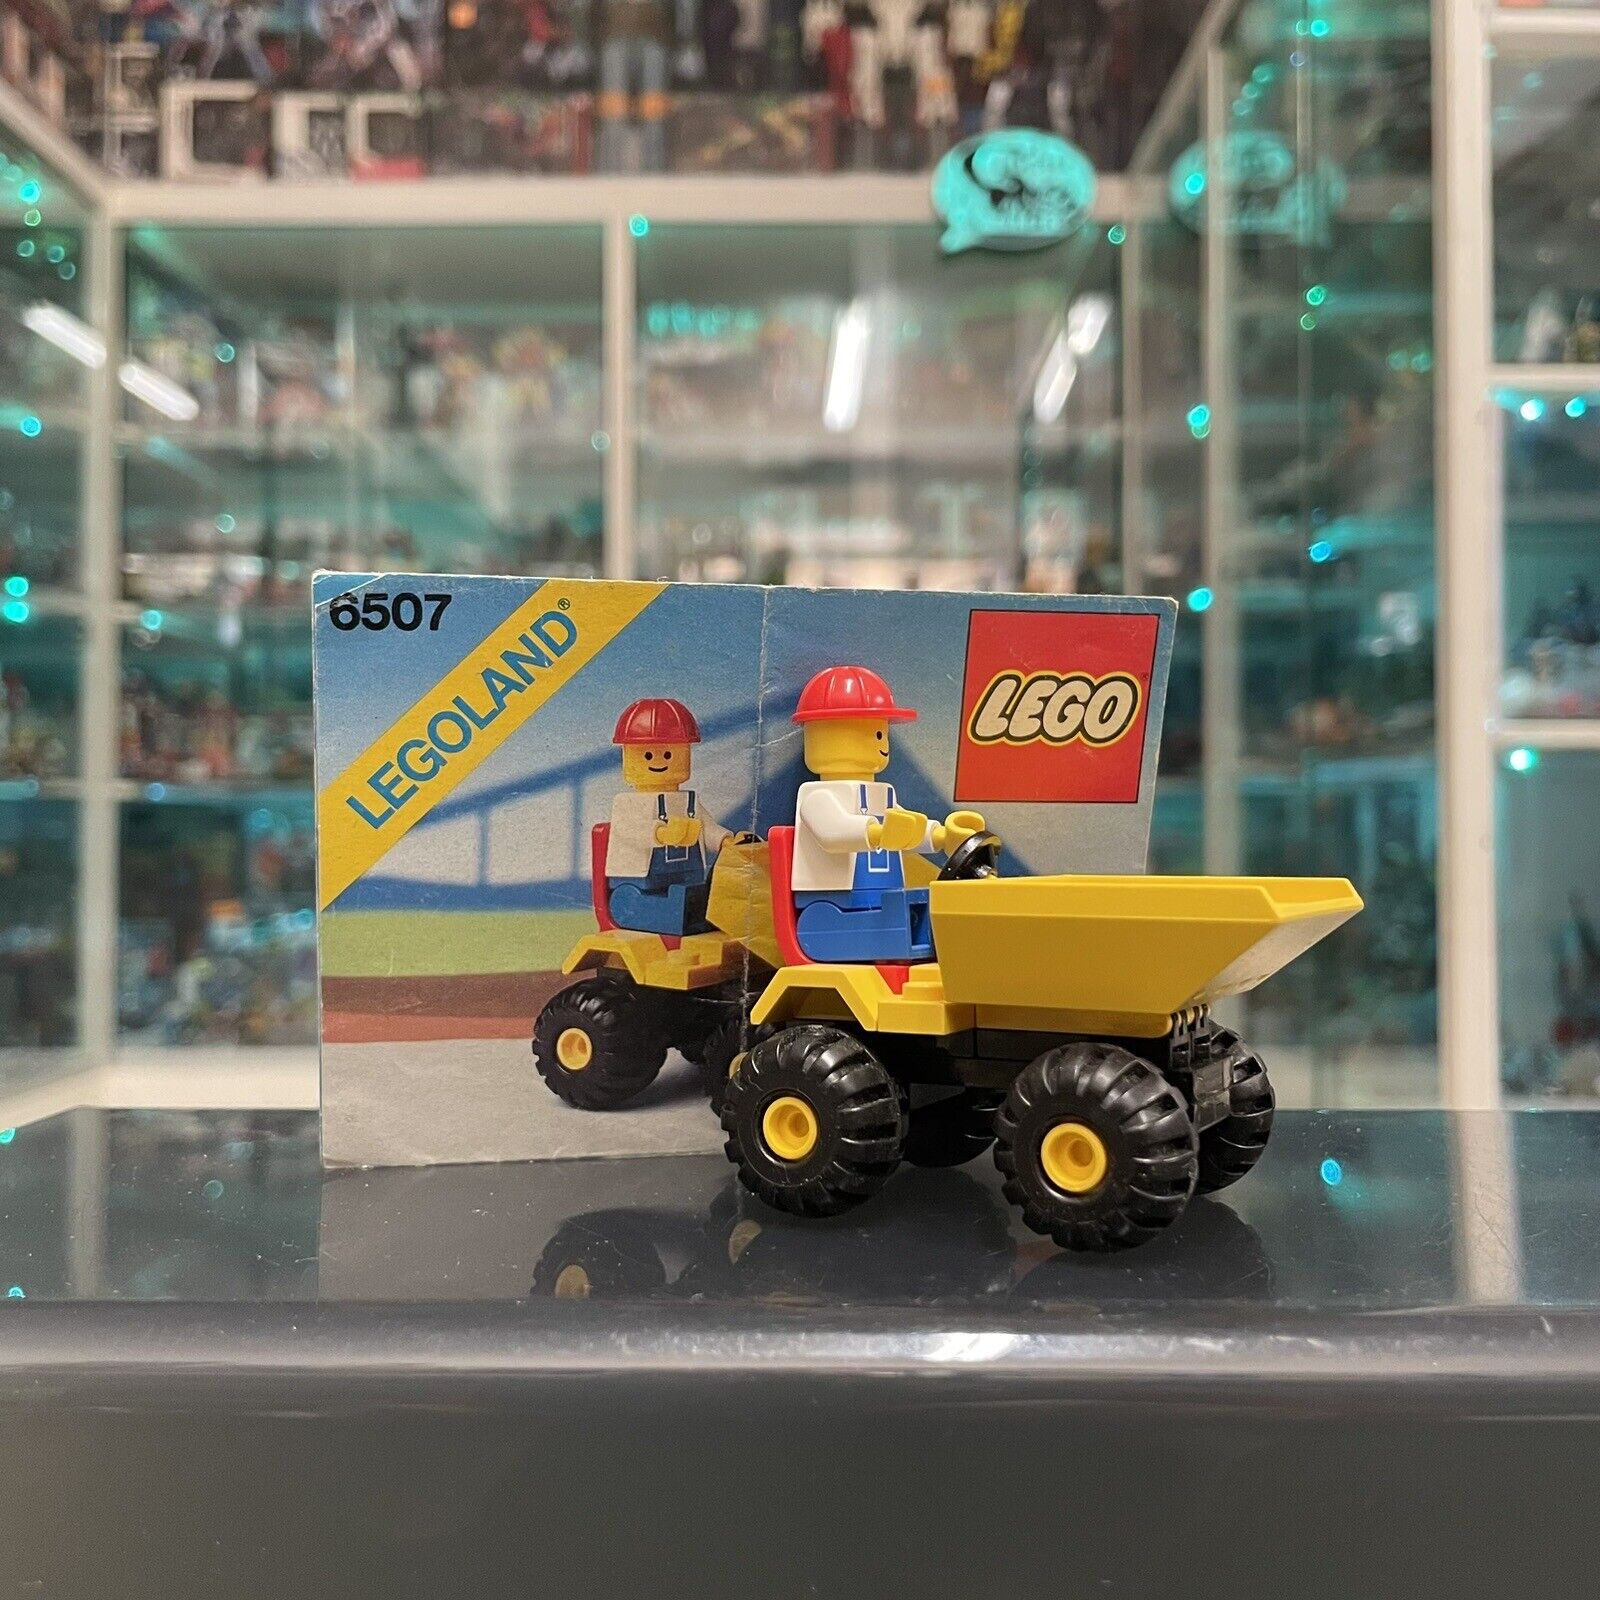 Lego-City-6507-Mini-Dumper-completo-134855726413